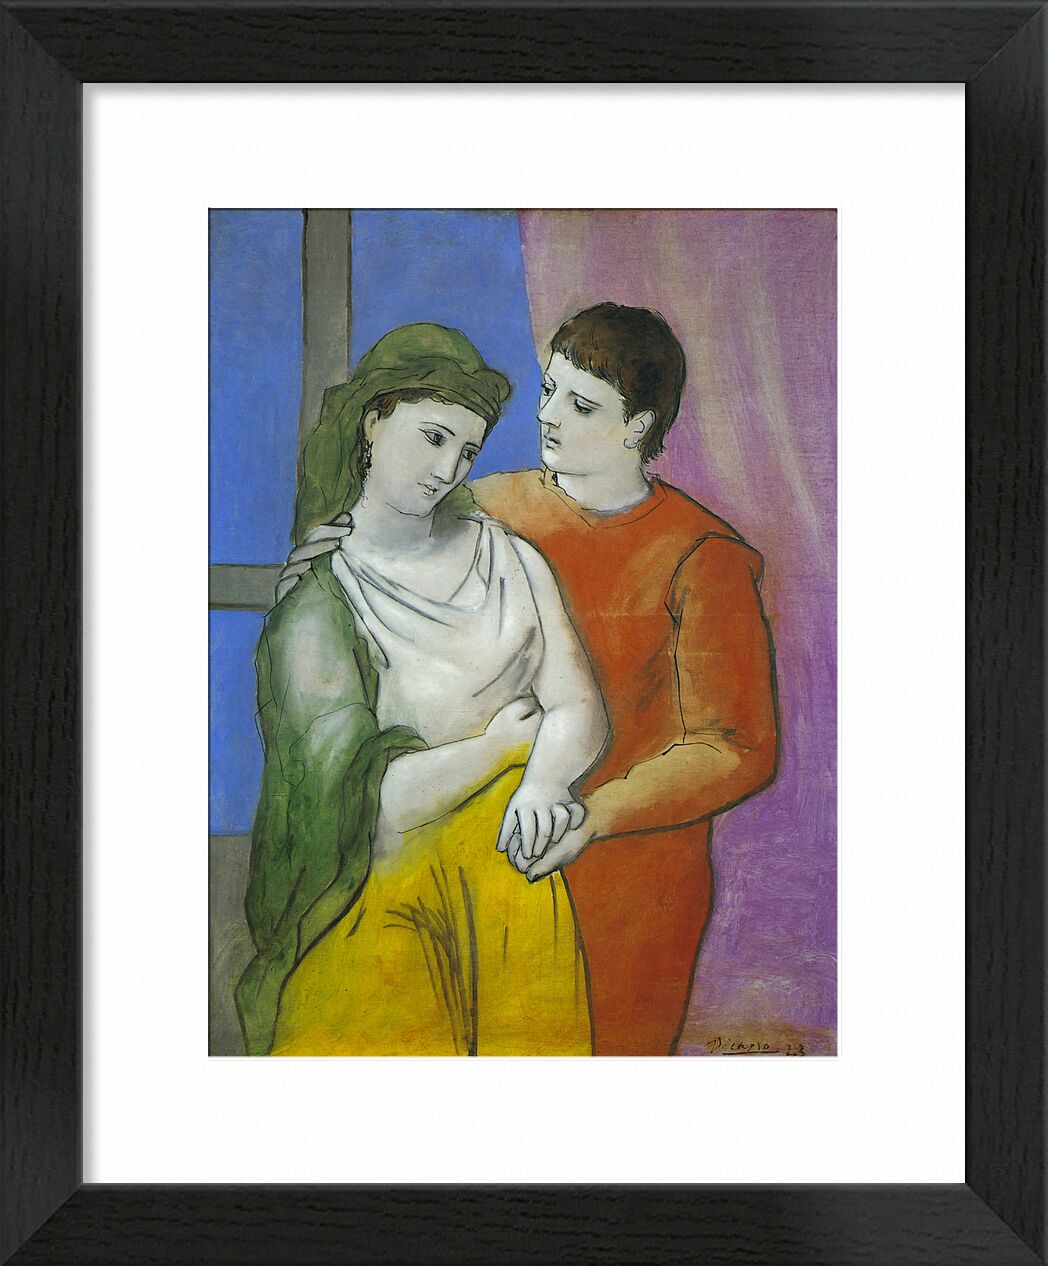 The Lovers - Picasso von Bildende Kunst, Prodi Art, Picasso, Liebe, Zeichnung, Malerei, Liebhaber